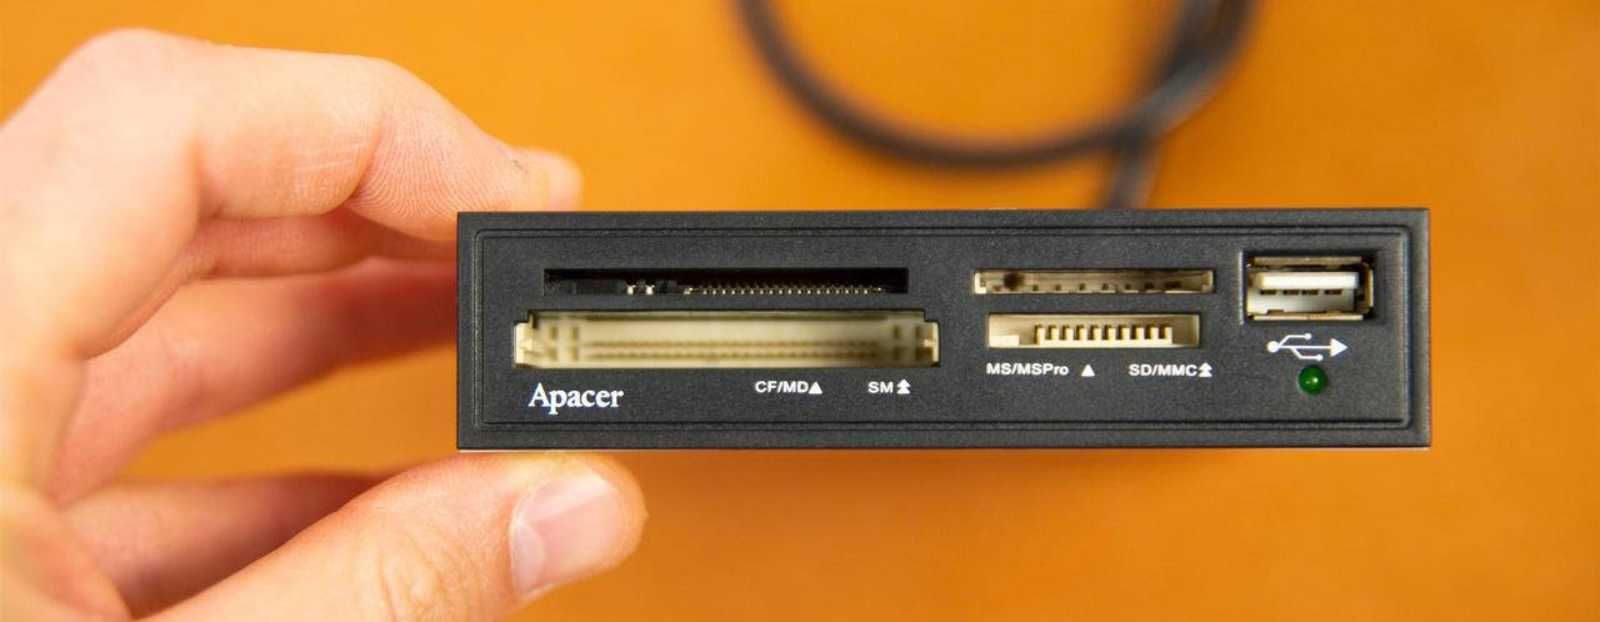 Кардридер Apacer  с USB для 3.5-дюймового отсека ПК